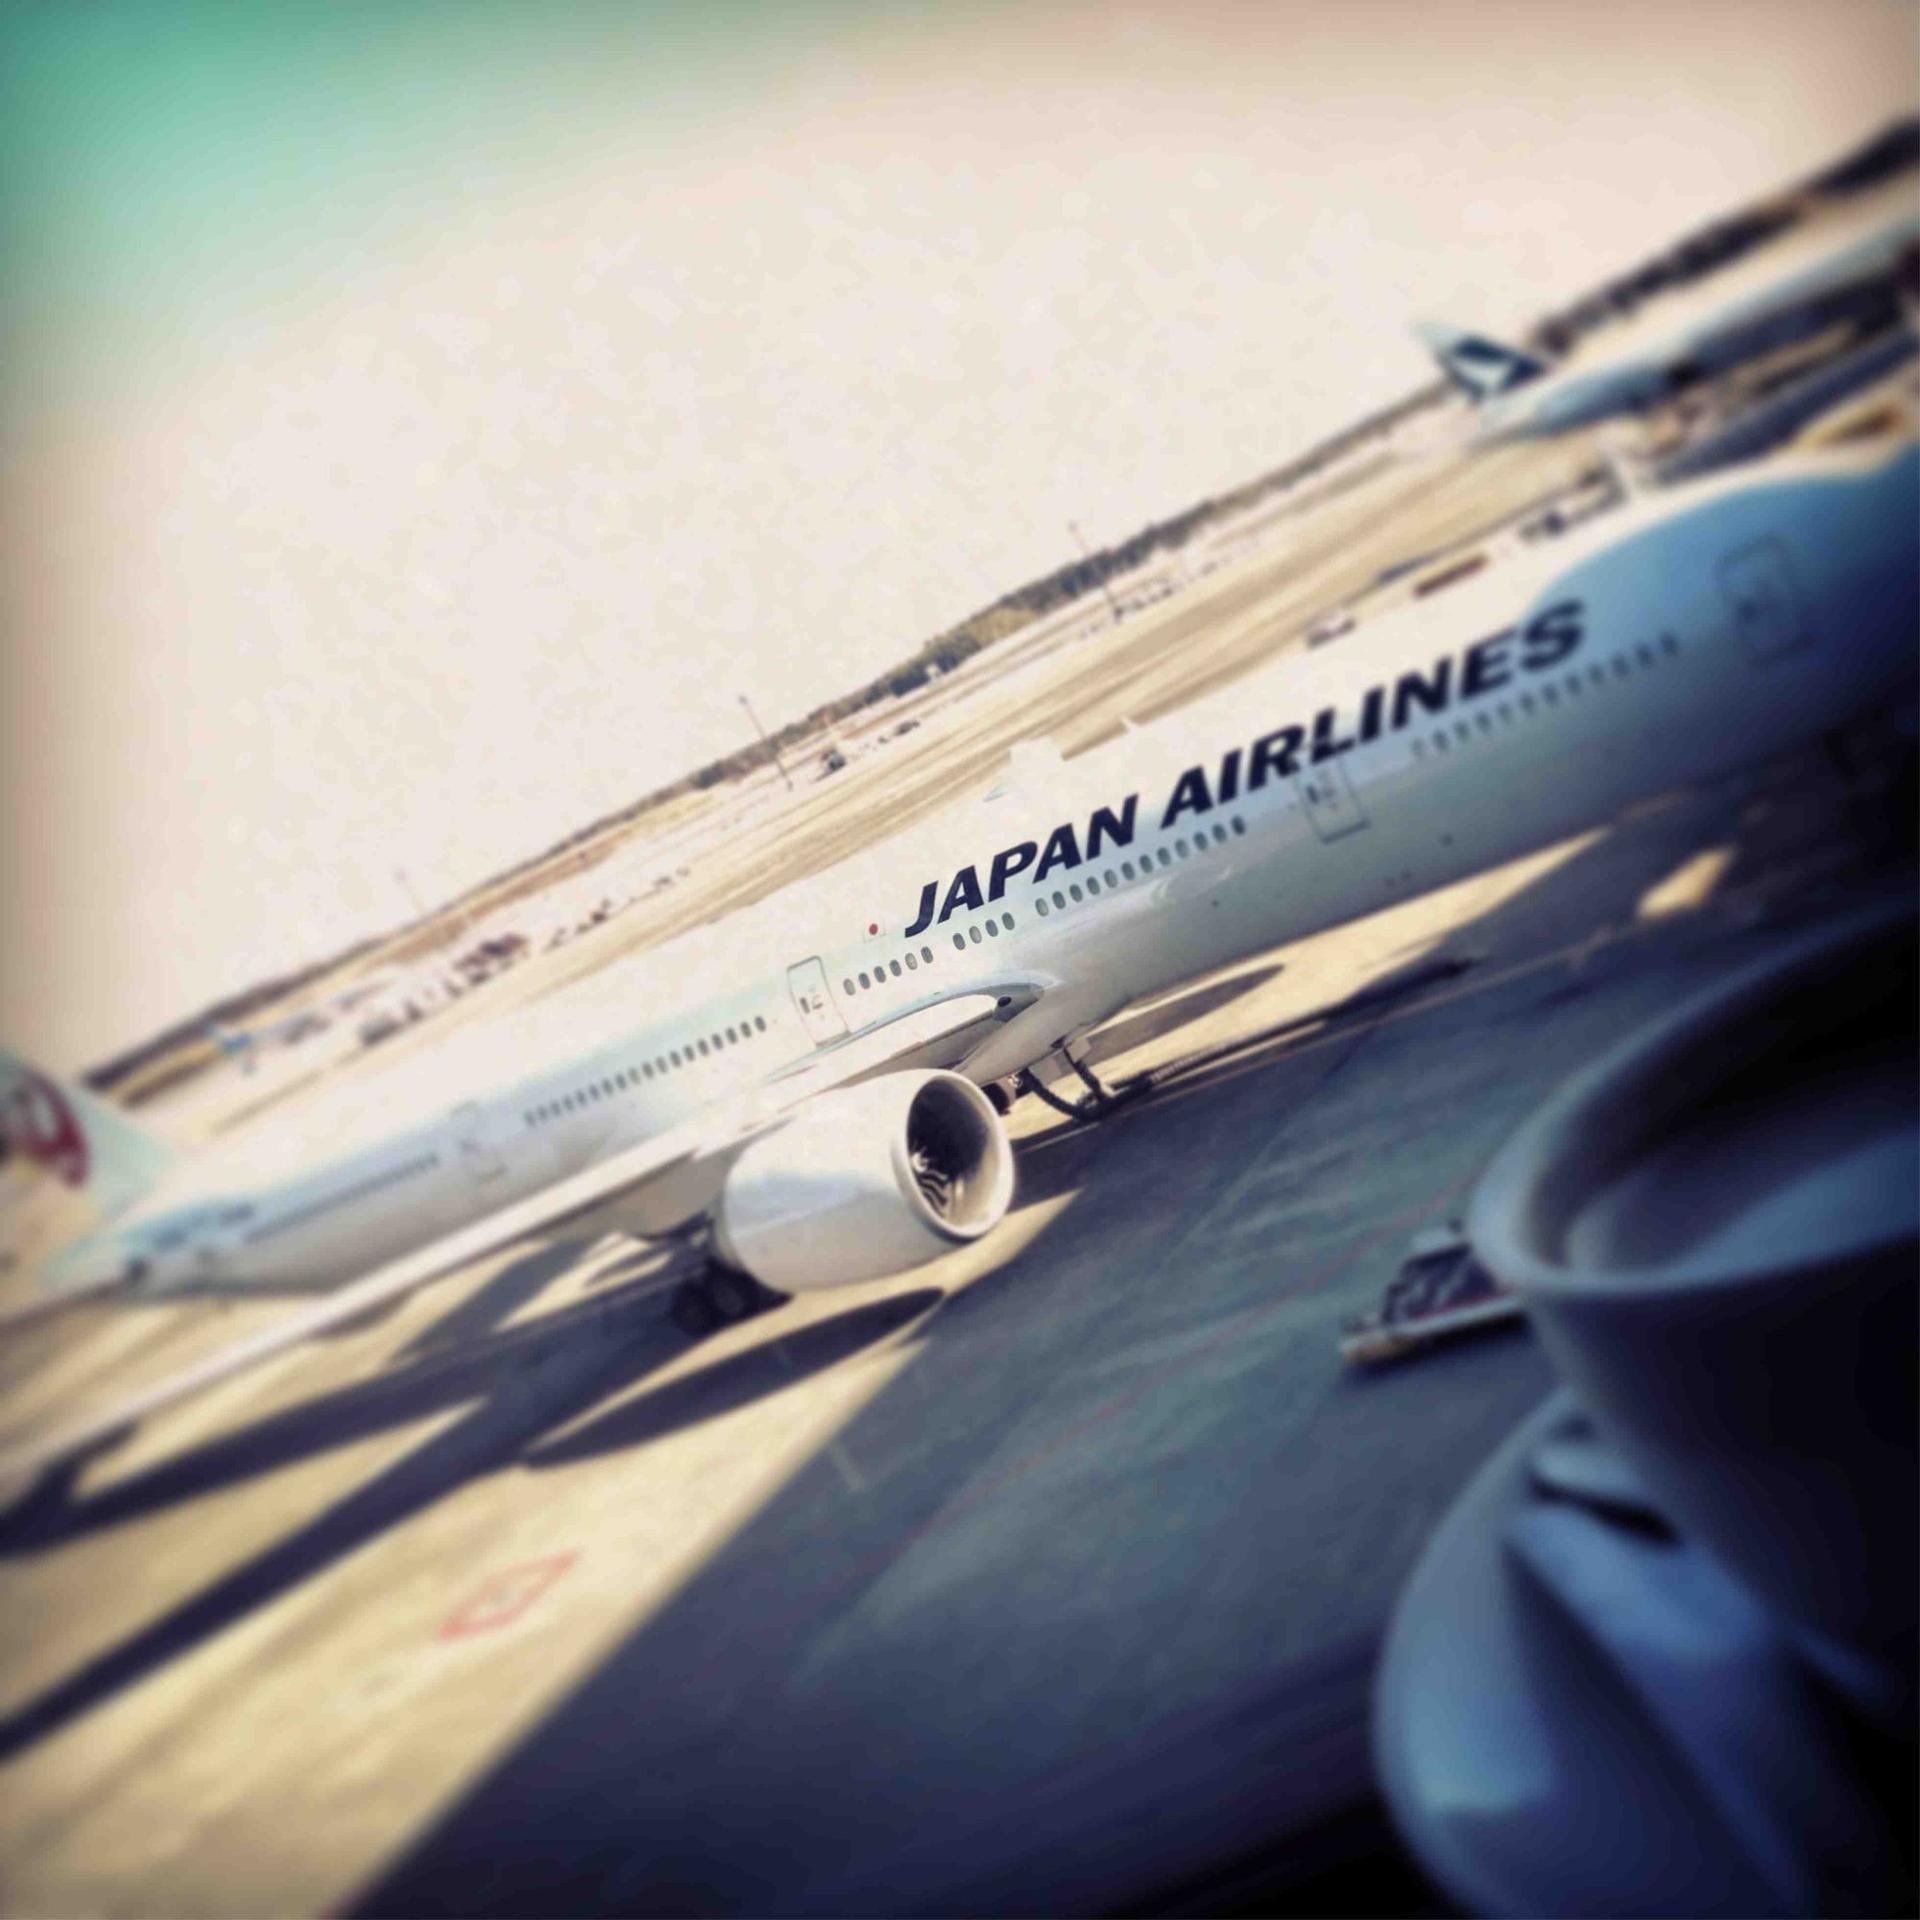 Japan Airlines JAL Sakura Lounge image 24 of 25